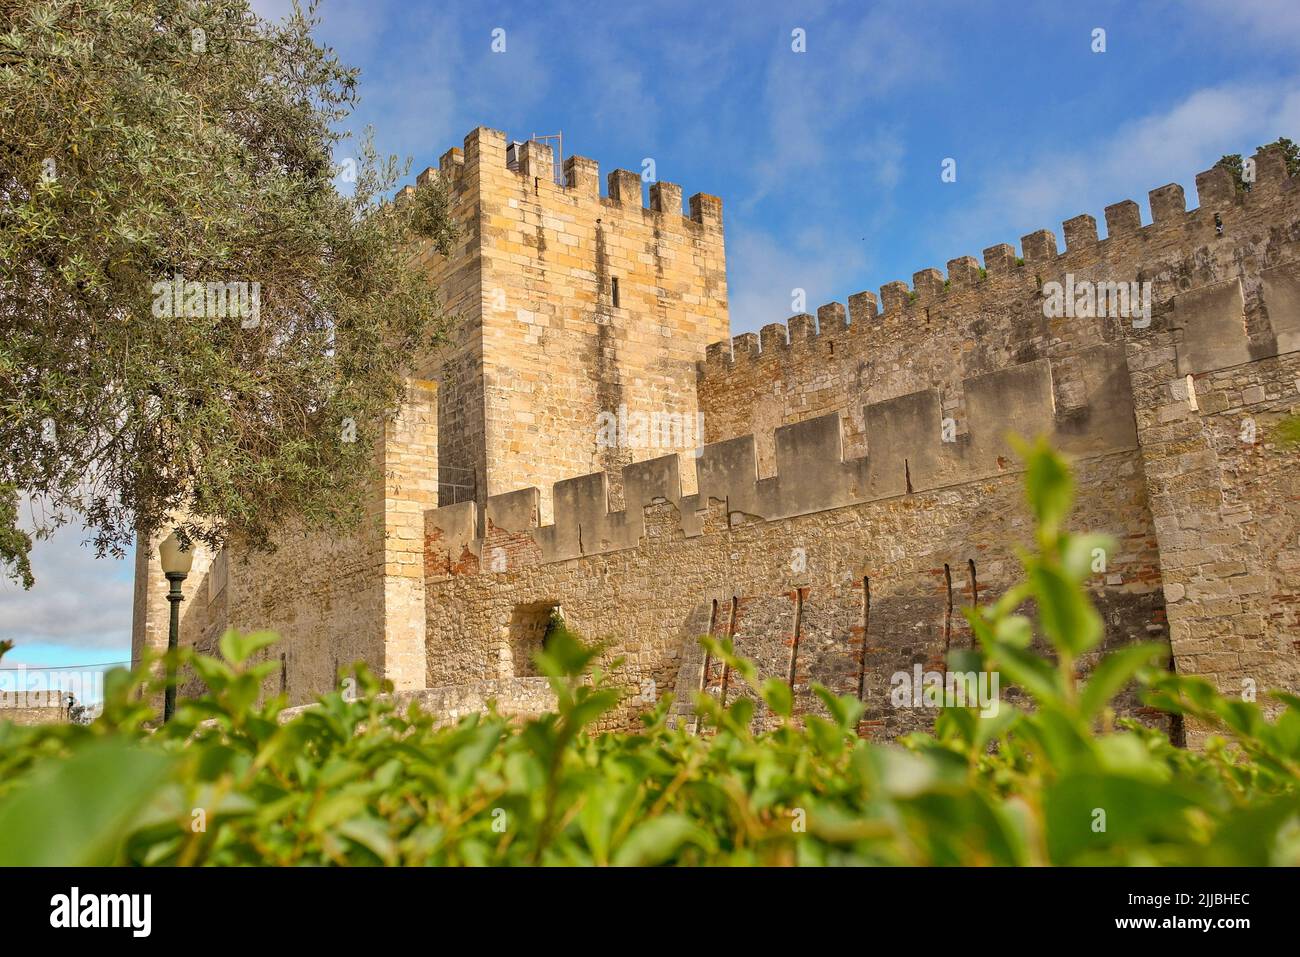 The Saint Georges Castle, Lisbon, Portugal Stock Photo